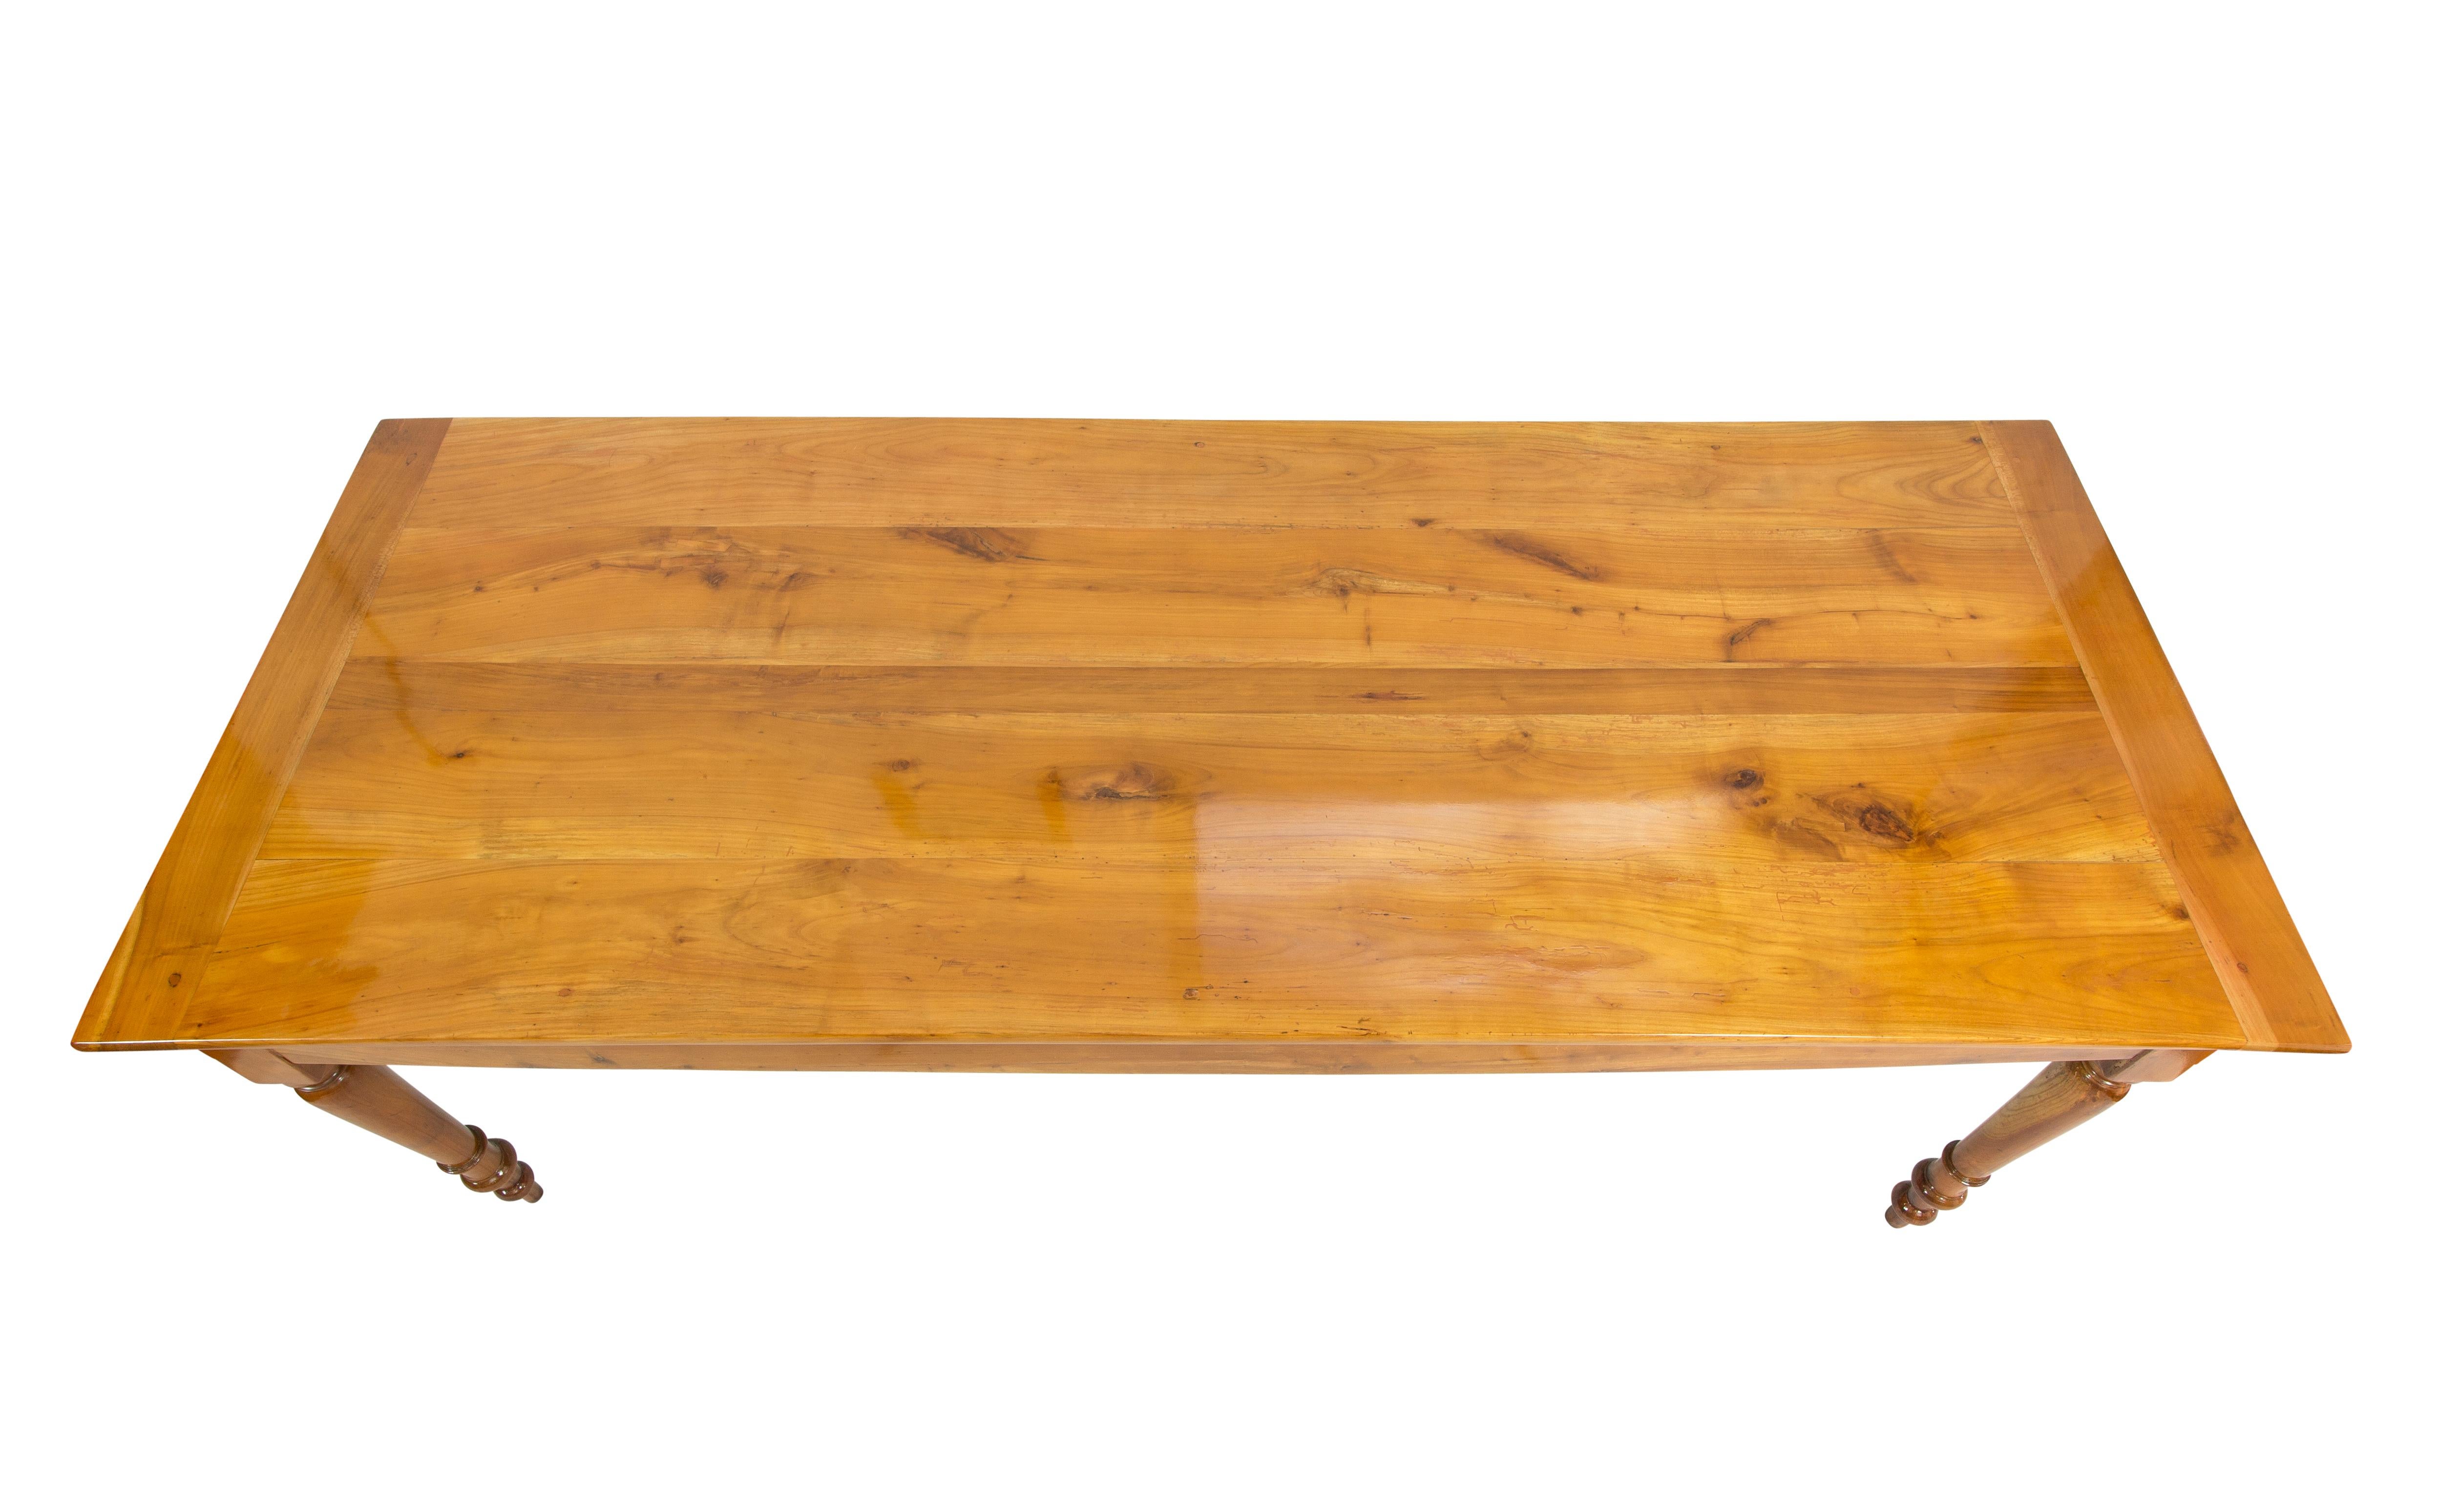 Bauernhoftisch aus massivem Kirschbaumholz, aus der späten Biedermeierzeit um 1850, mit einer Schublade (Kirschbaum/Kiefer.) auf der einen Seite und einer ausziehbaren Platte aus Eiche/Kirschbaum auf der anderen Seite. 
Der Abstand zwischen dem